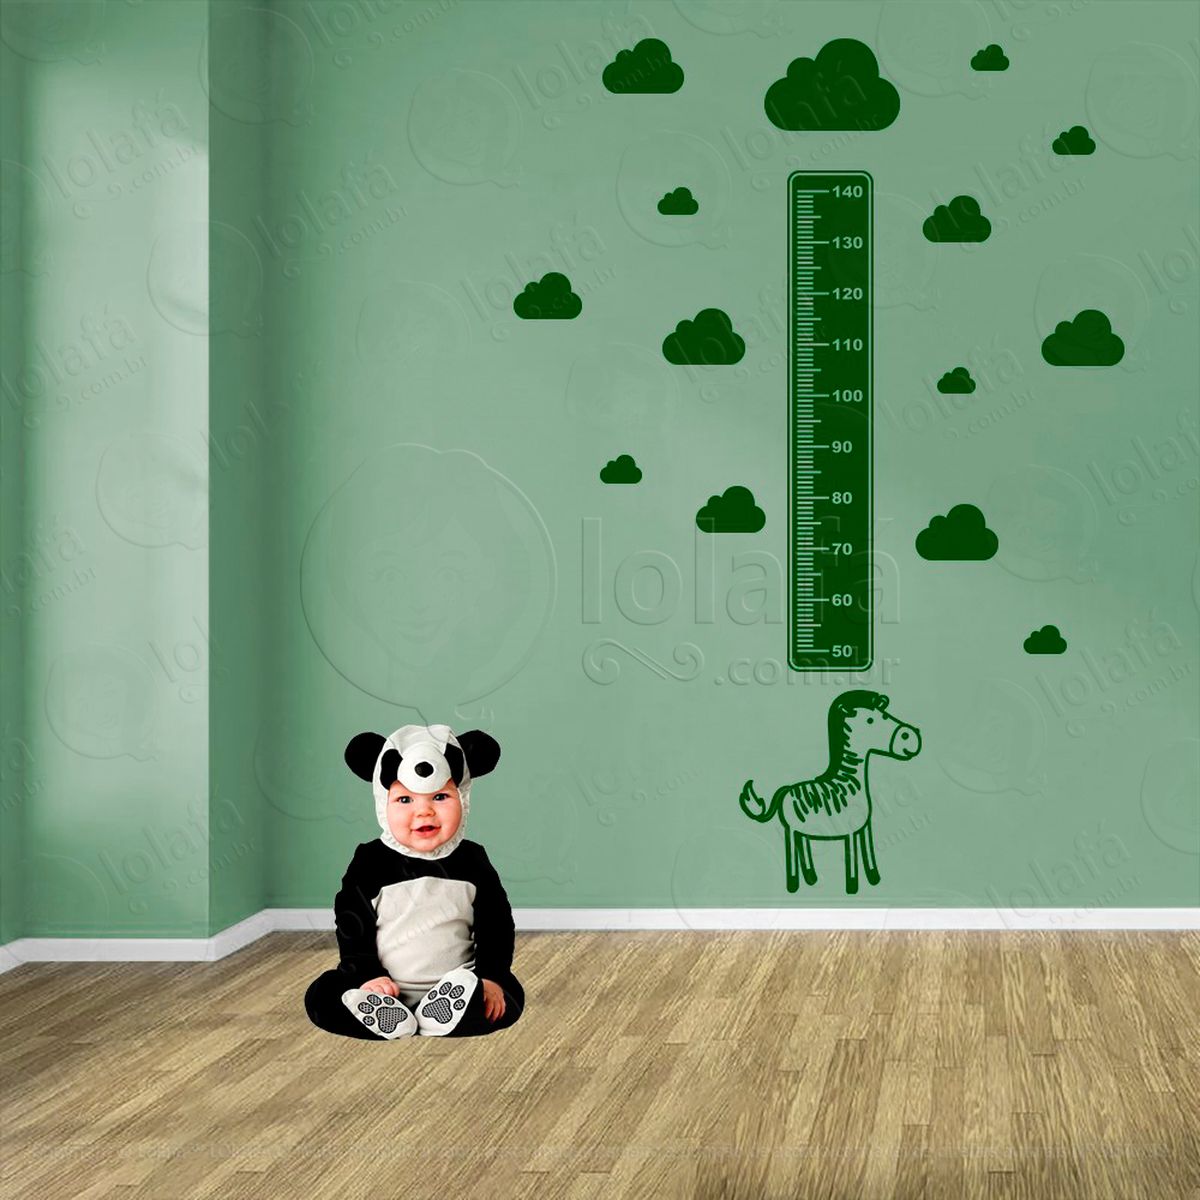 zebra e nuvens adesivo régua de crescimento infantil, medidor de altura para quarto, porta e parede - mod:1084